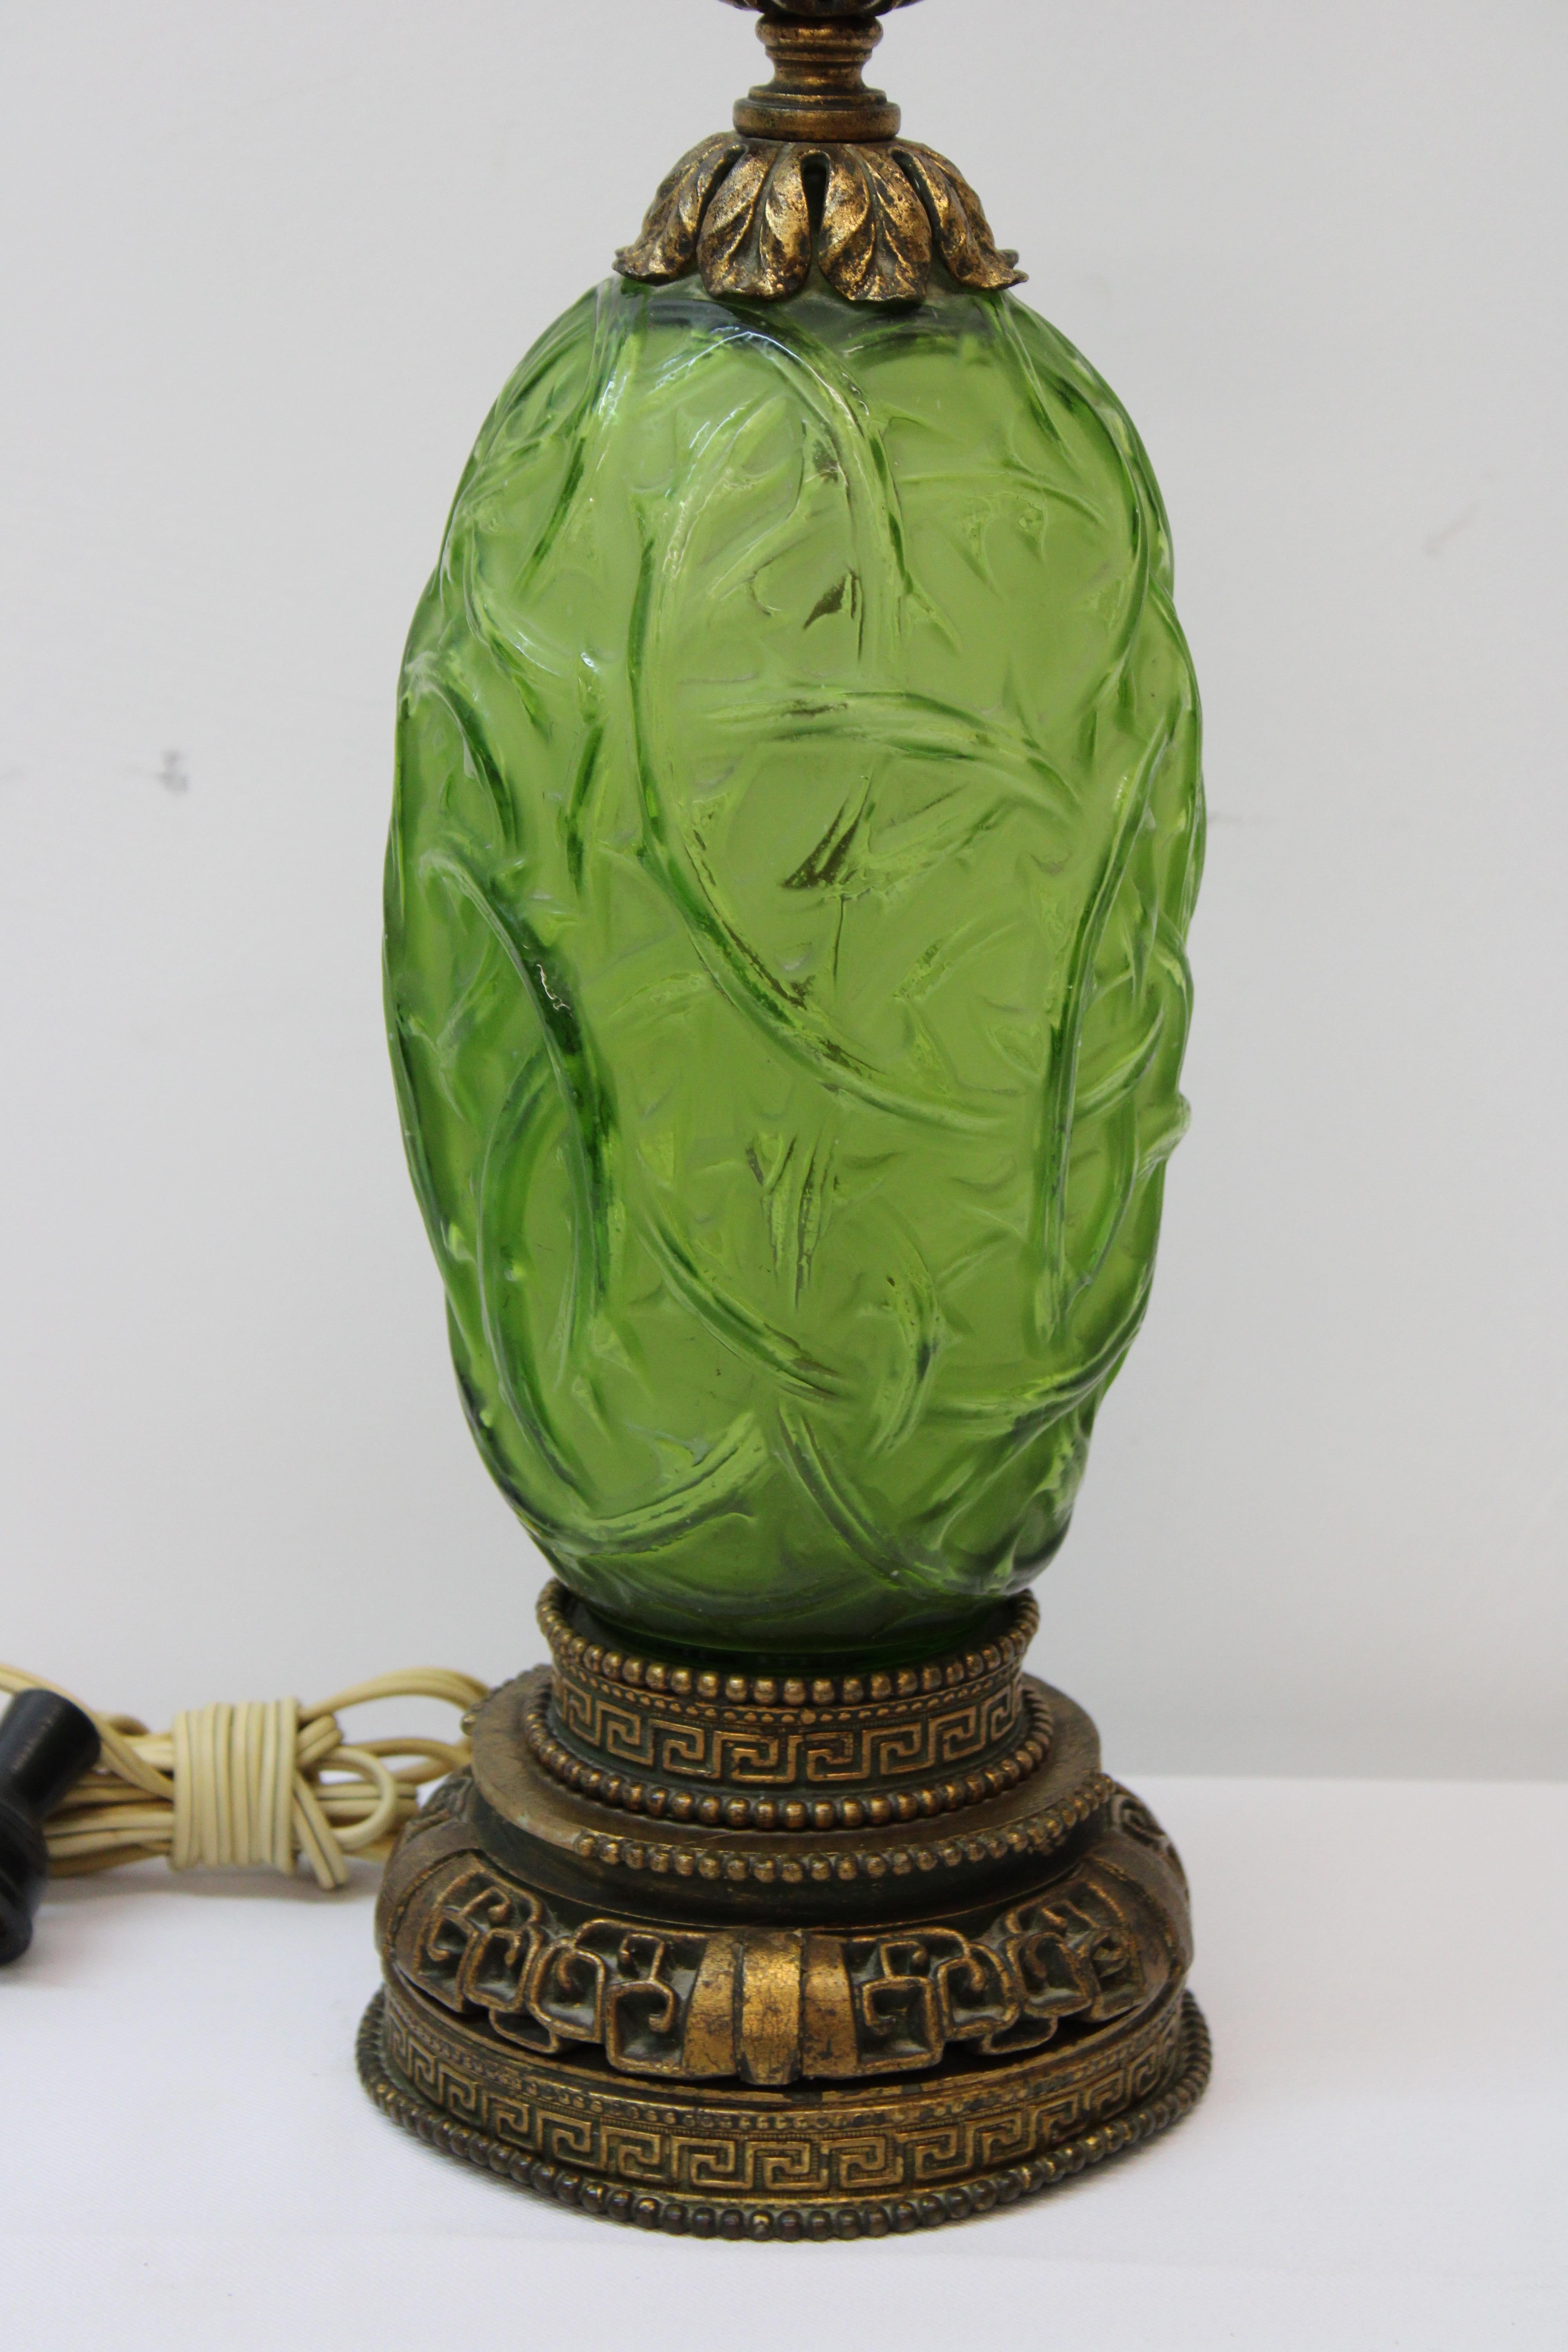 C. 20. Jahrhundert

Jugendstil-Tischlampe aus mundgeblasenem grünem Glas und Messing

Lampe fehlt ( Zugschnur für eine der Seiten zum Einschalten der Lampe ).